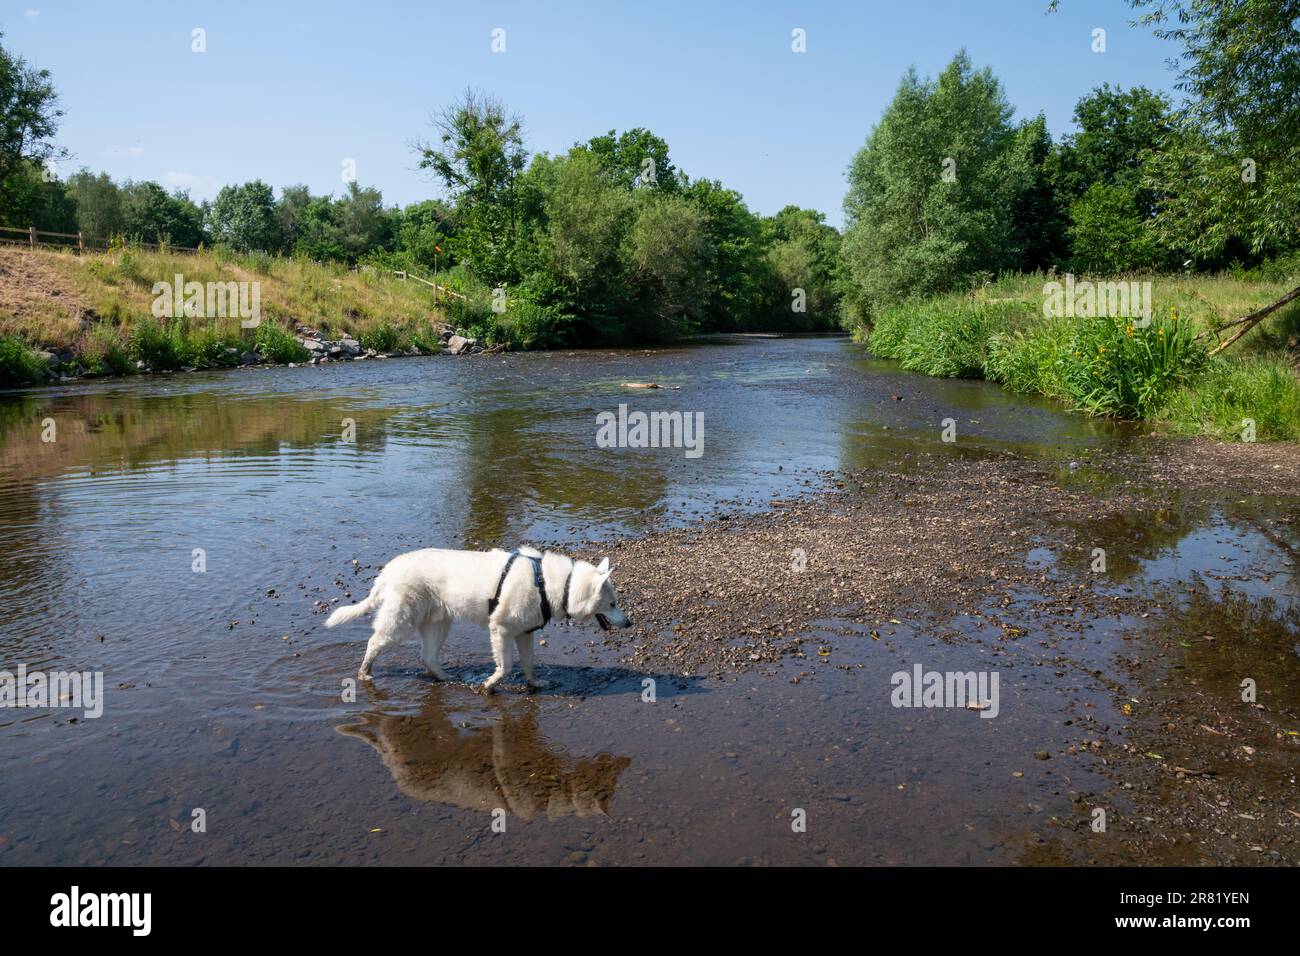 White Siberian Husky pagaiando nel fiume Tame al parco di campagna di vale rosso, Stockport, Greater Manchester, Inghilterra. Foto Stock